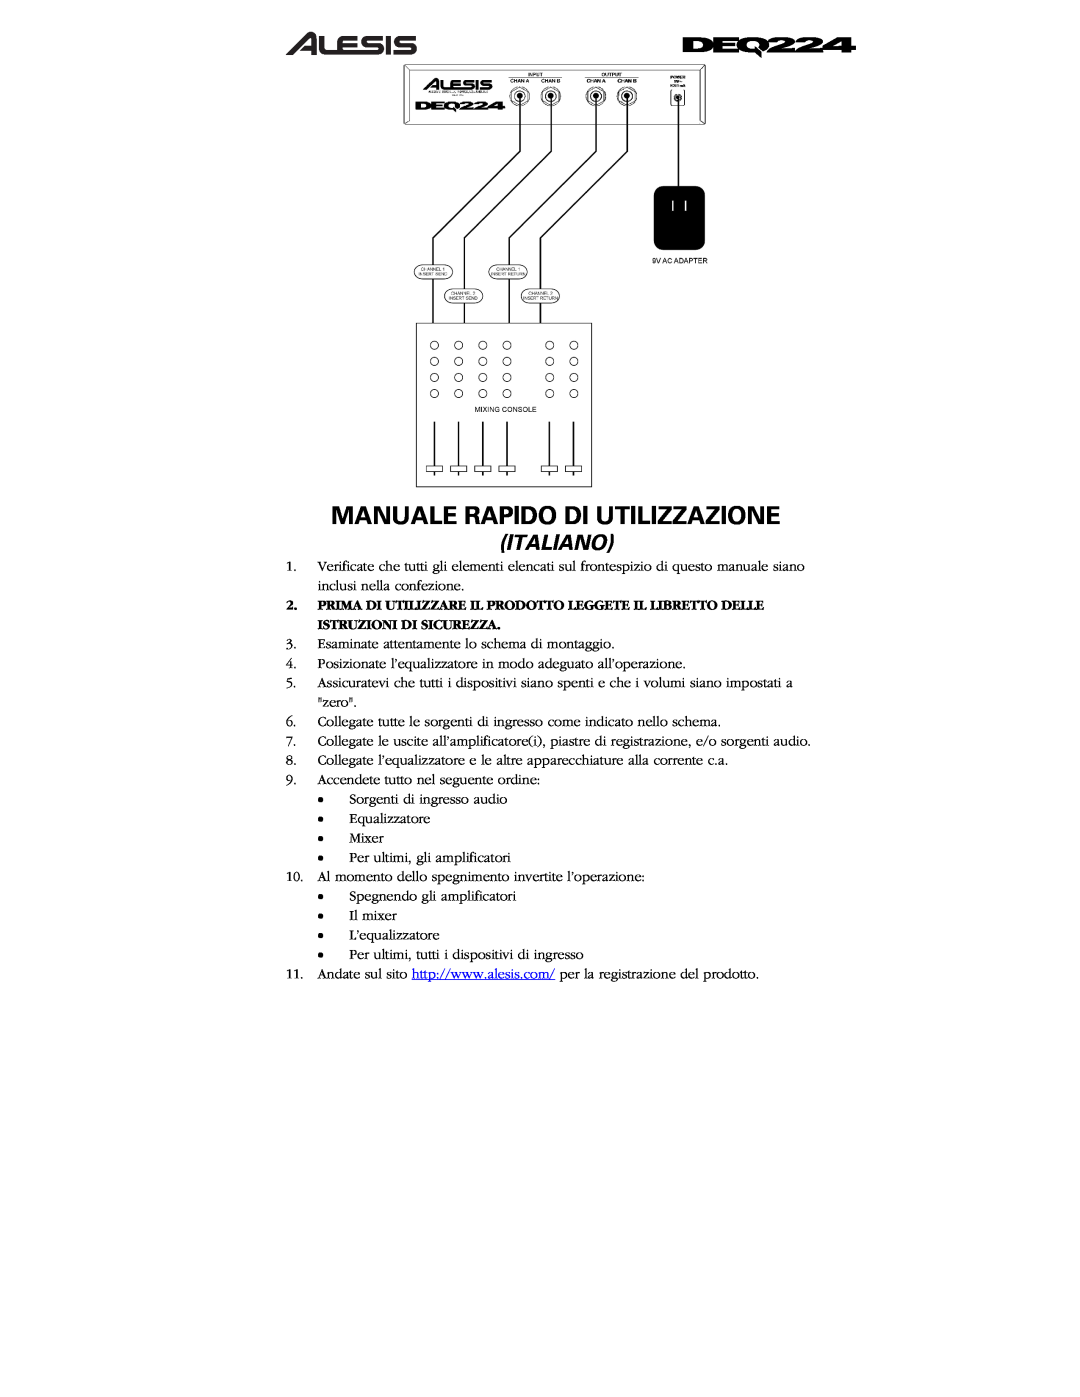 Alesis DEQ224 quick start Manuale Rapido Di Utilizzazione, Italiano 